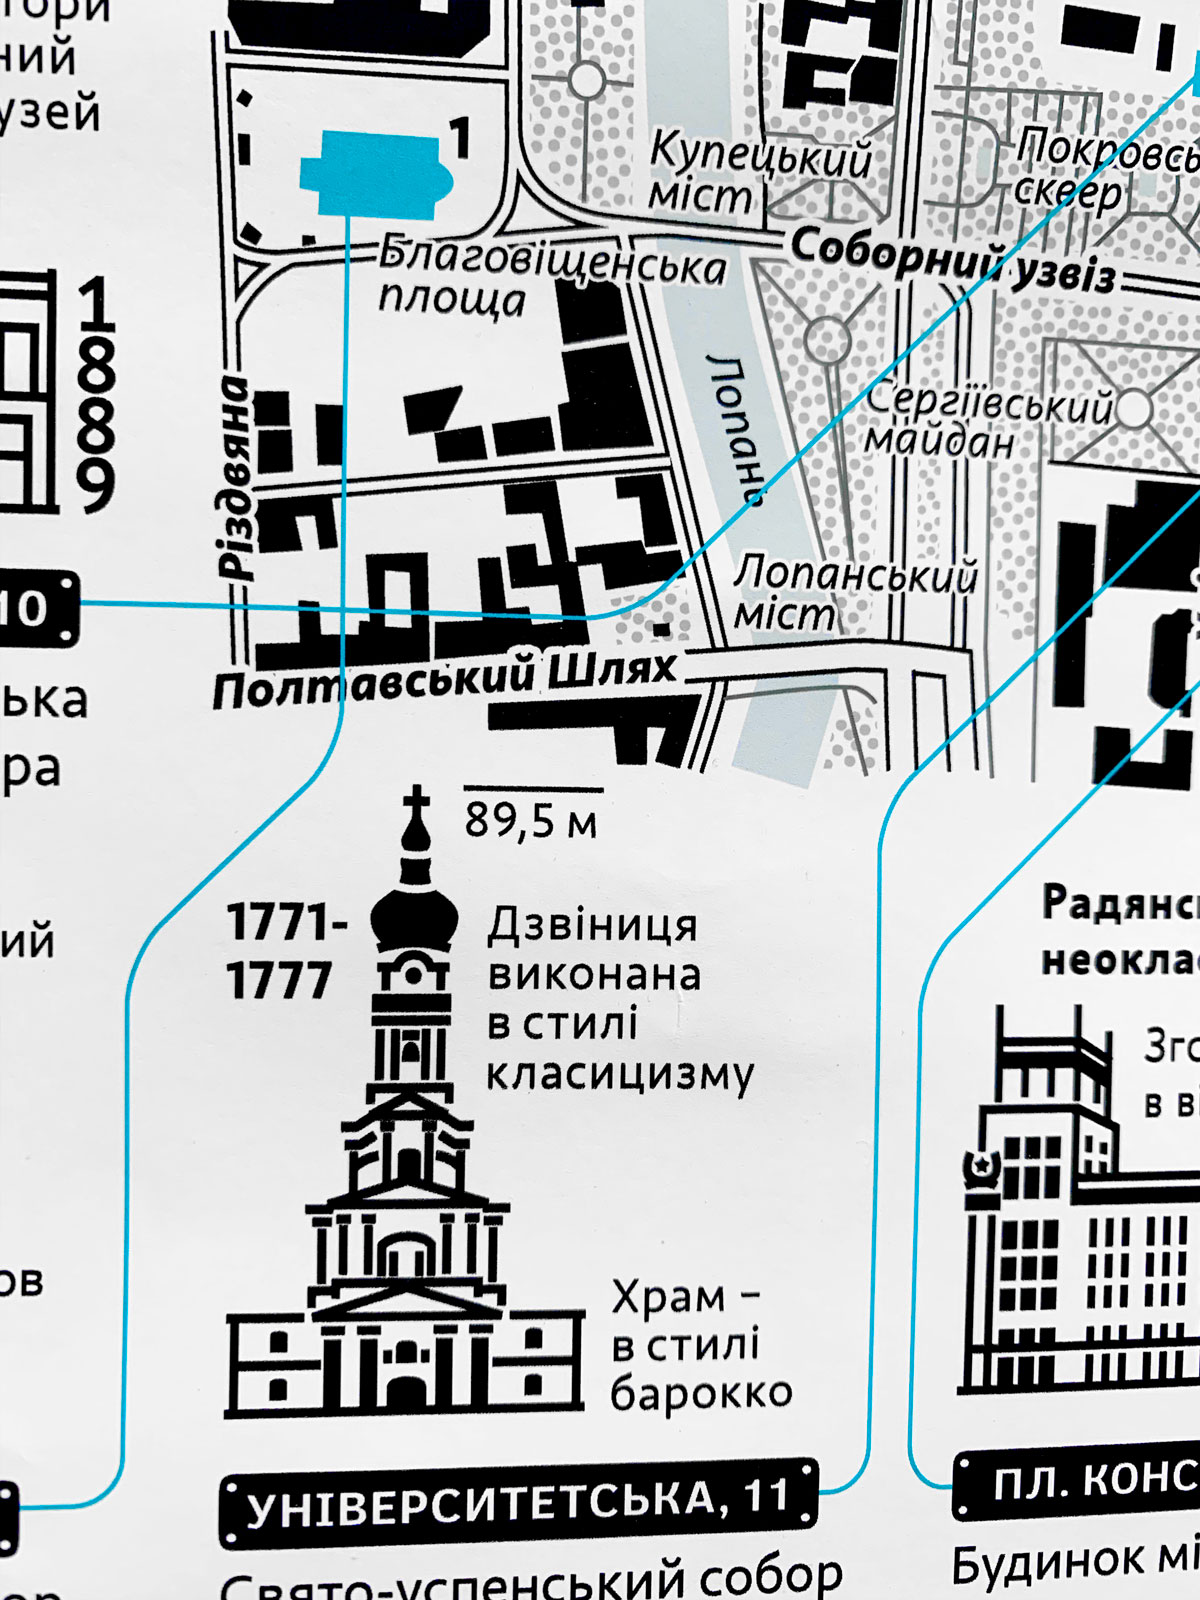 Дома и памятники Харькова